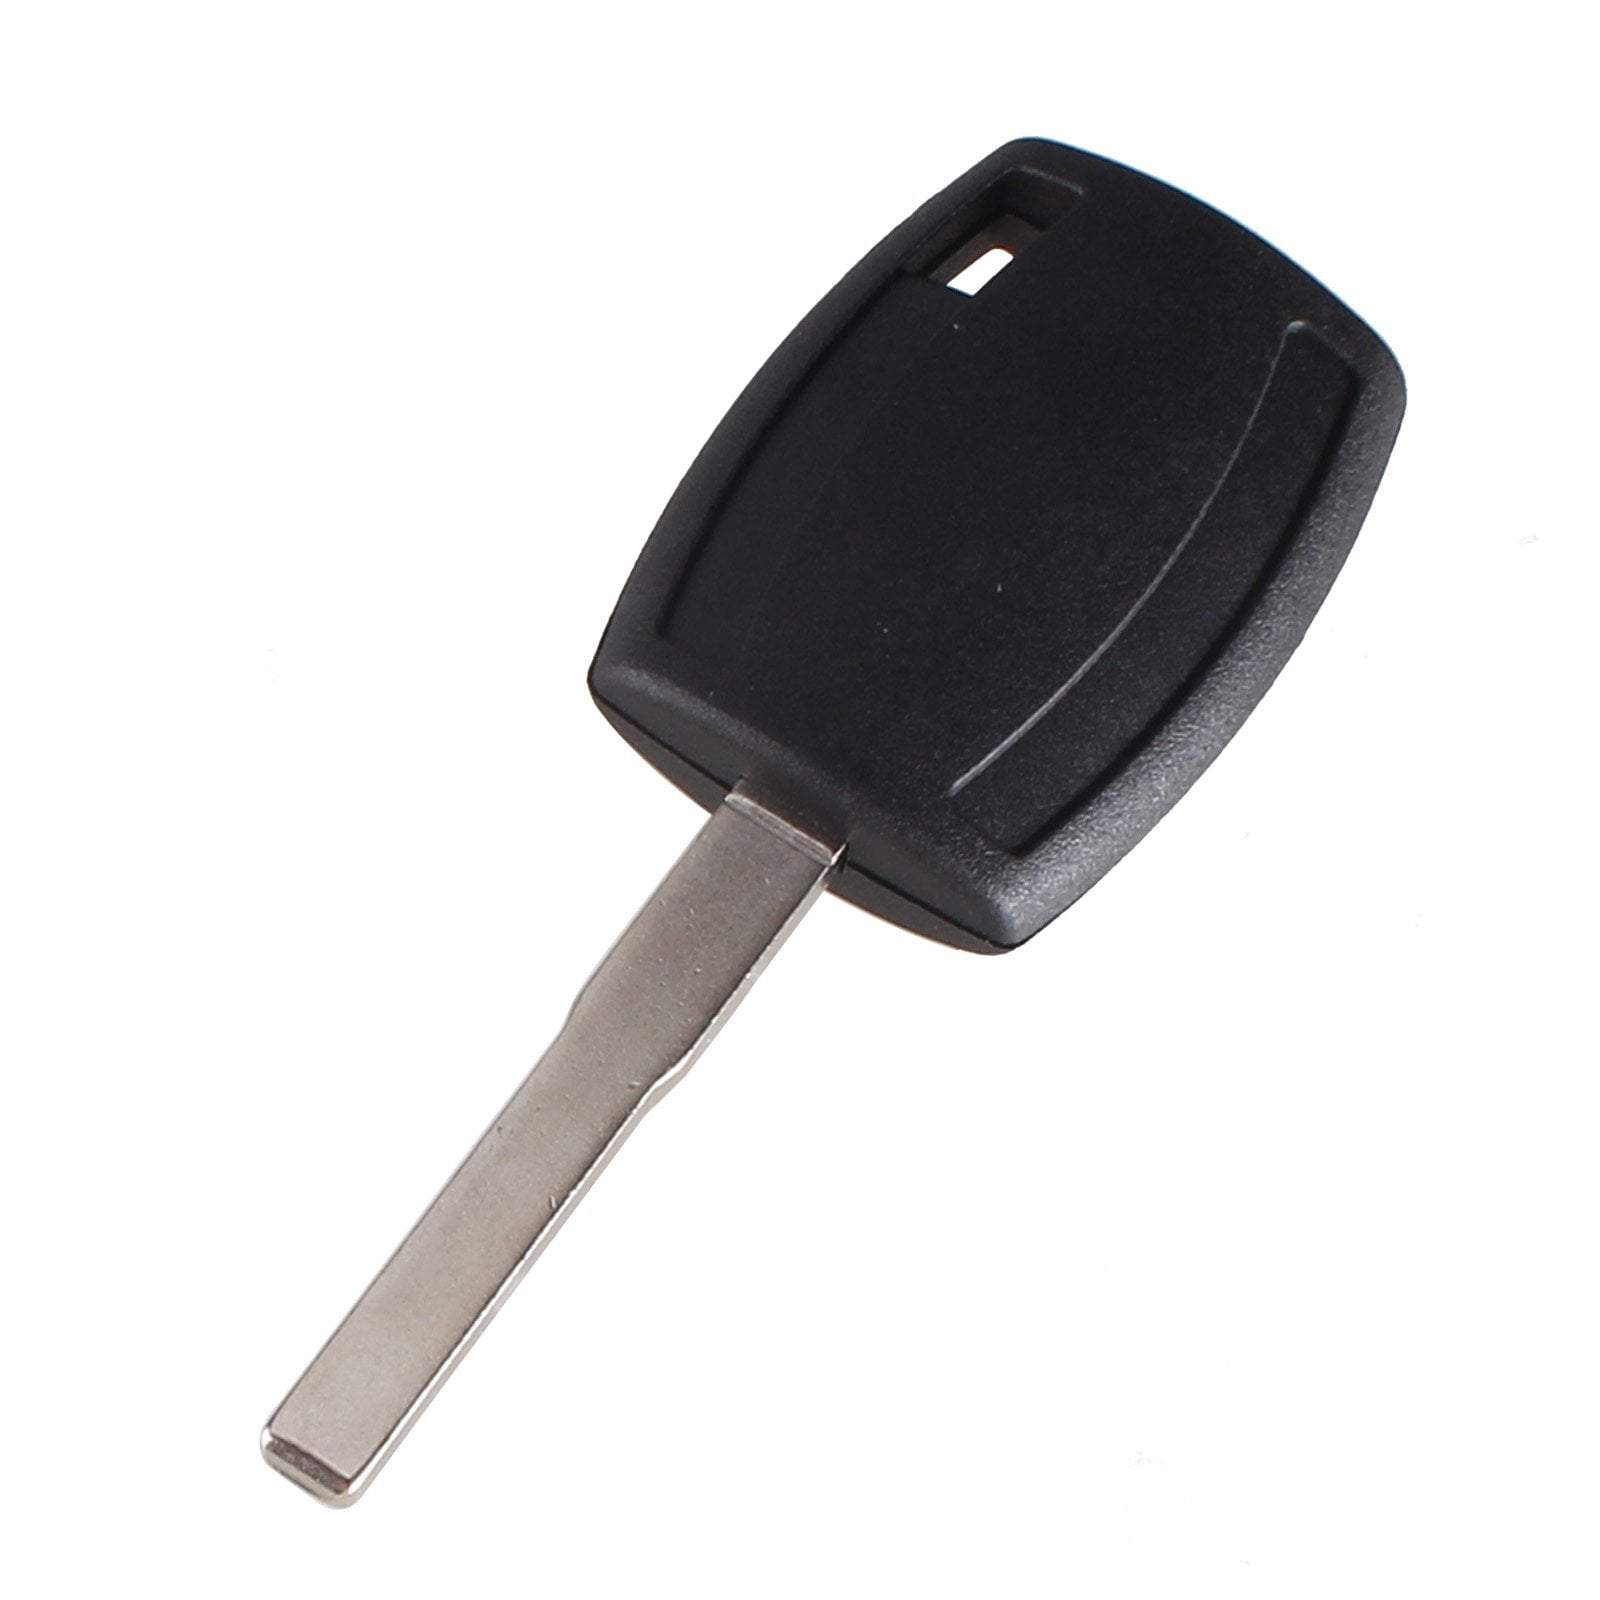 Fekete színű, gomb nélküli Ford kulcs, kulcsház. Nyers HU101 kulcsszárral.